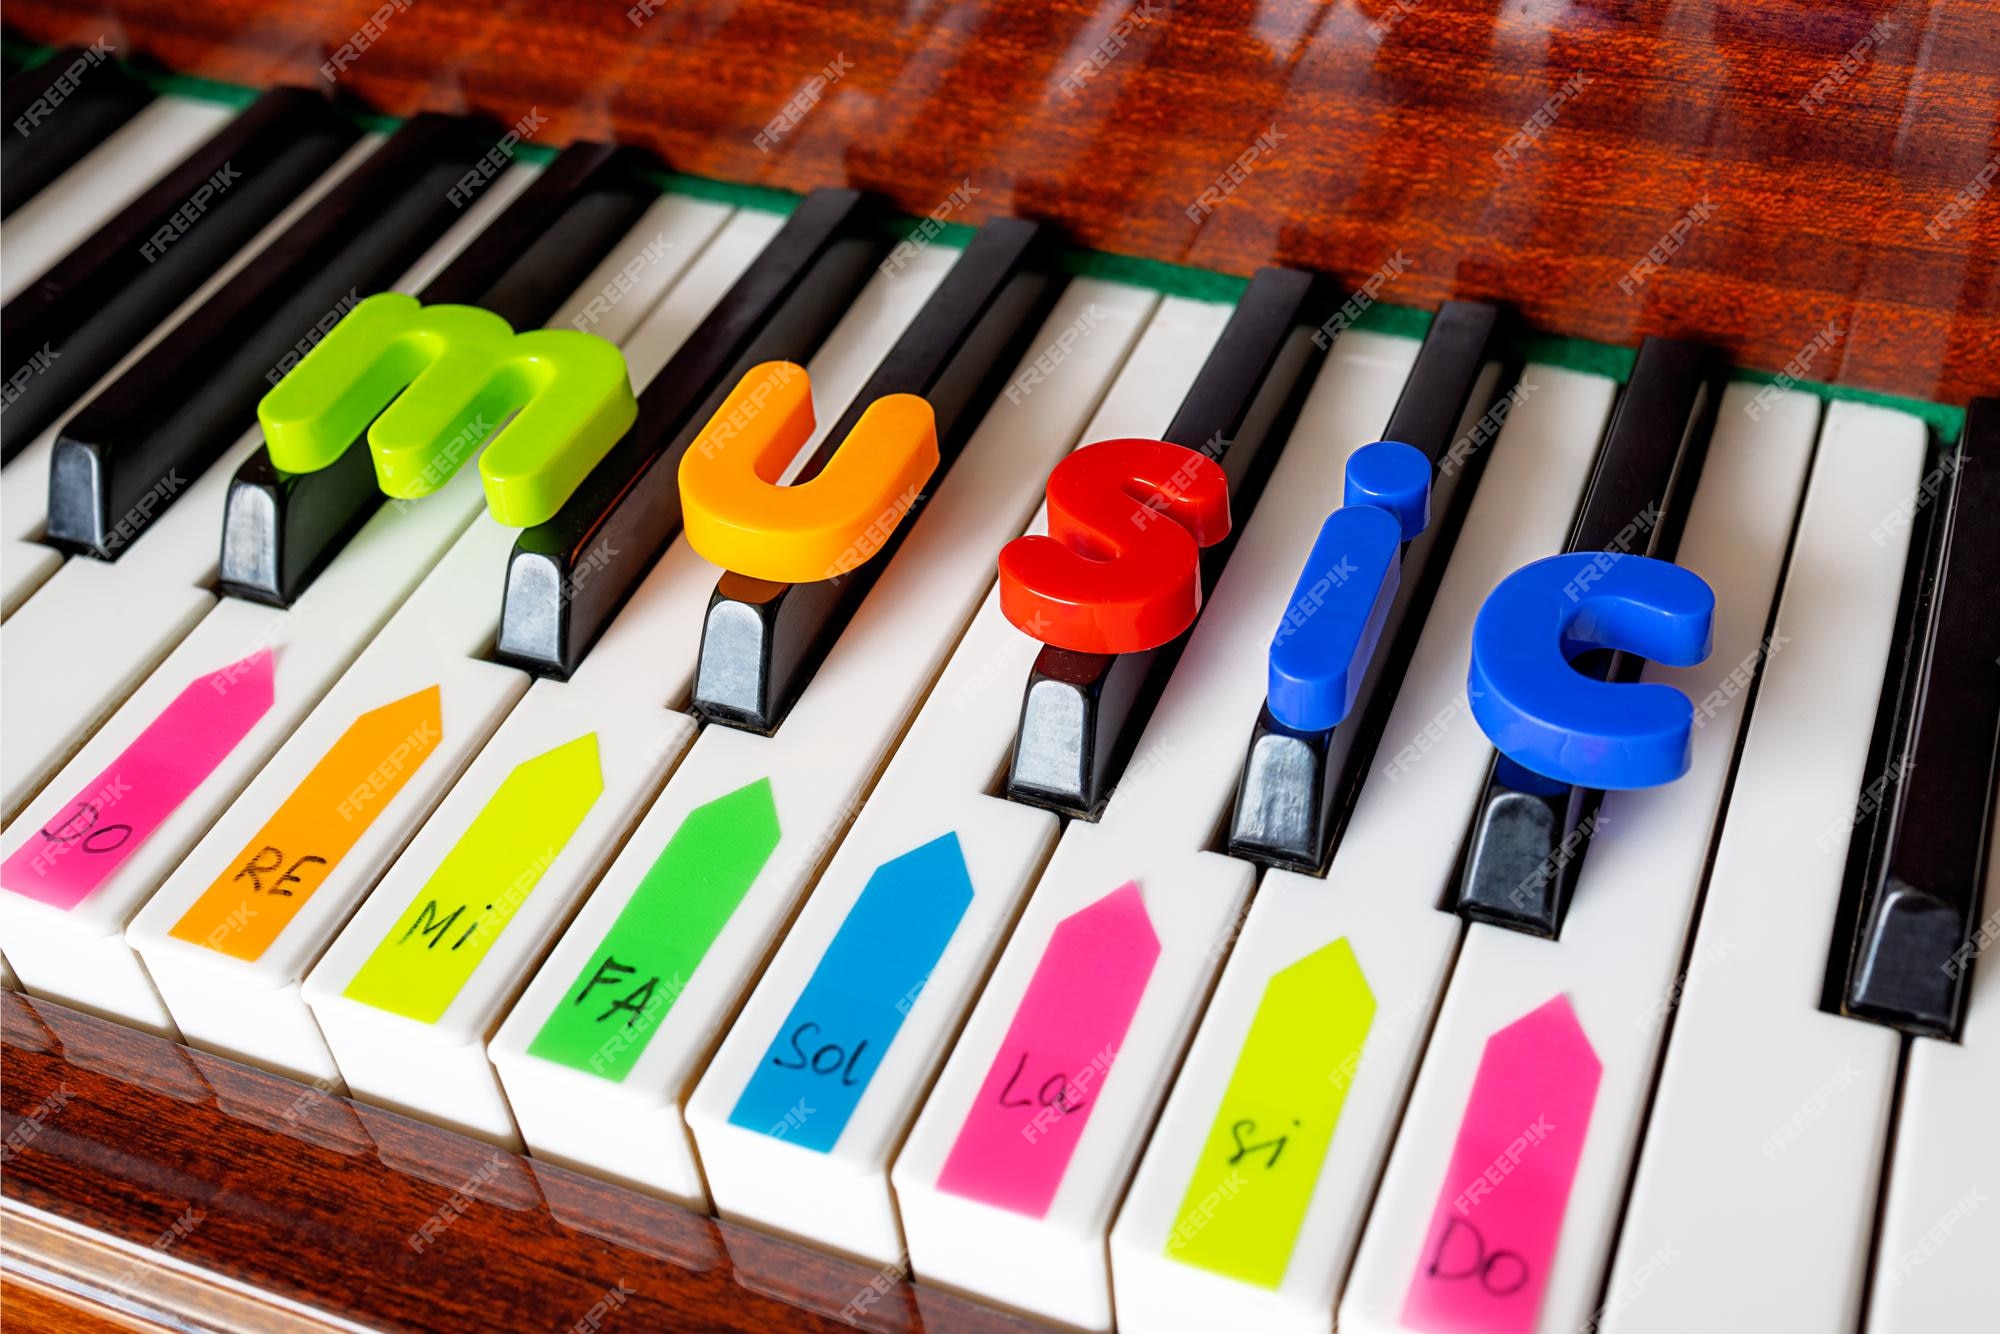 Mano Femenina Establece La Palabra Música De De Colores En El Piano Premium | rumdosptc.com